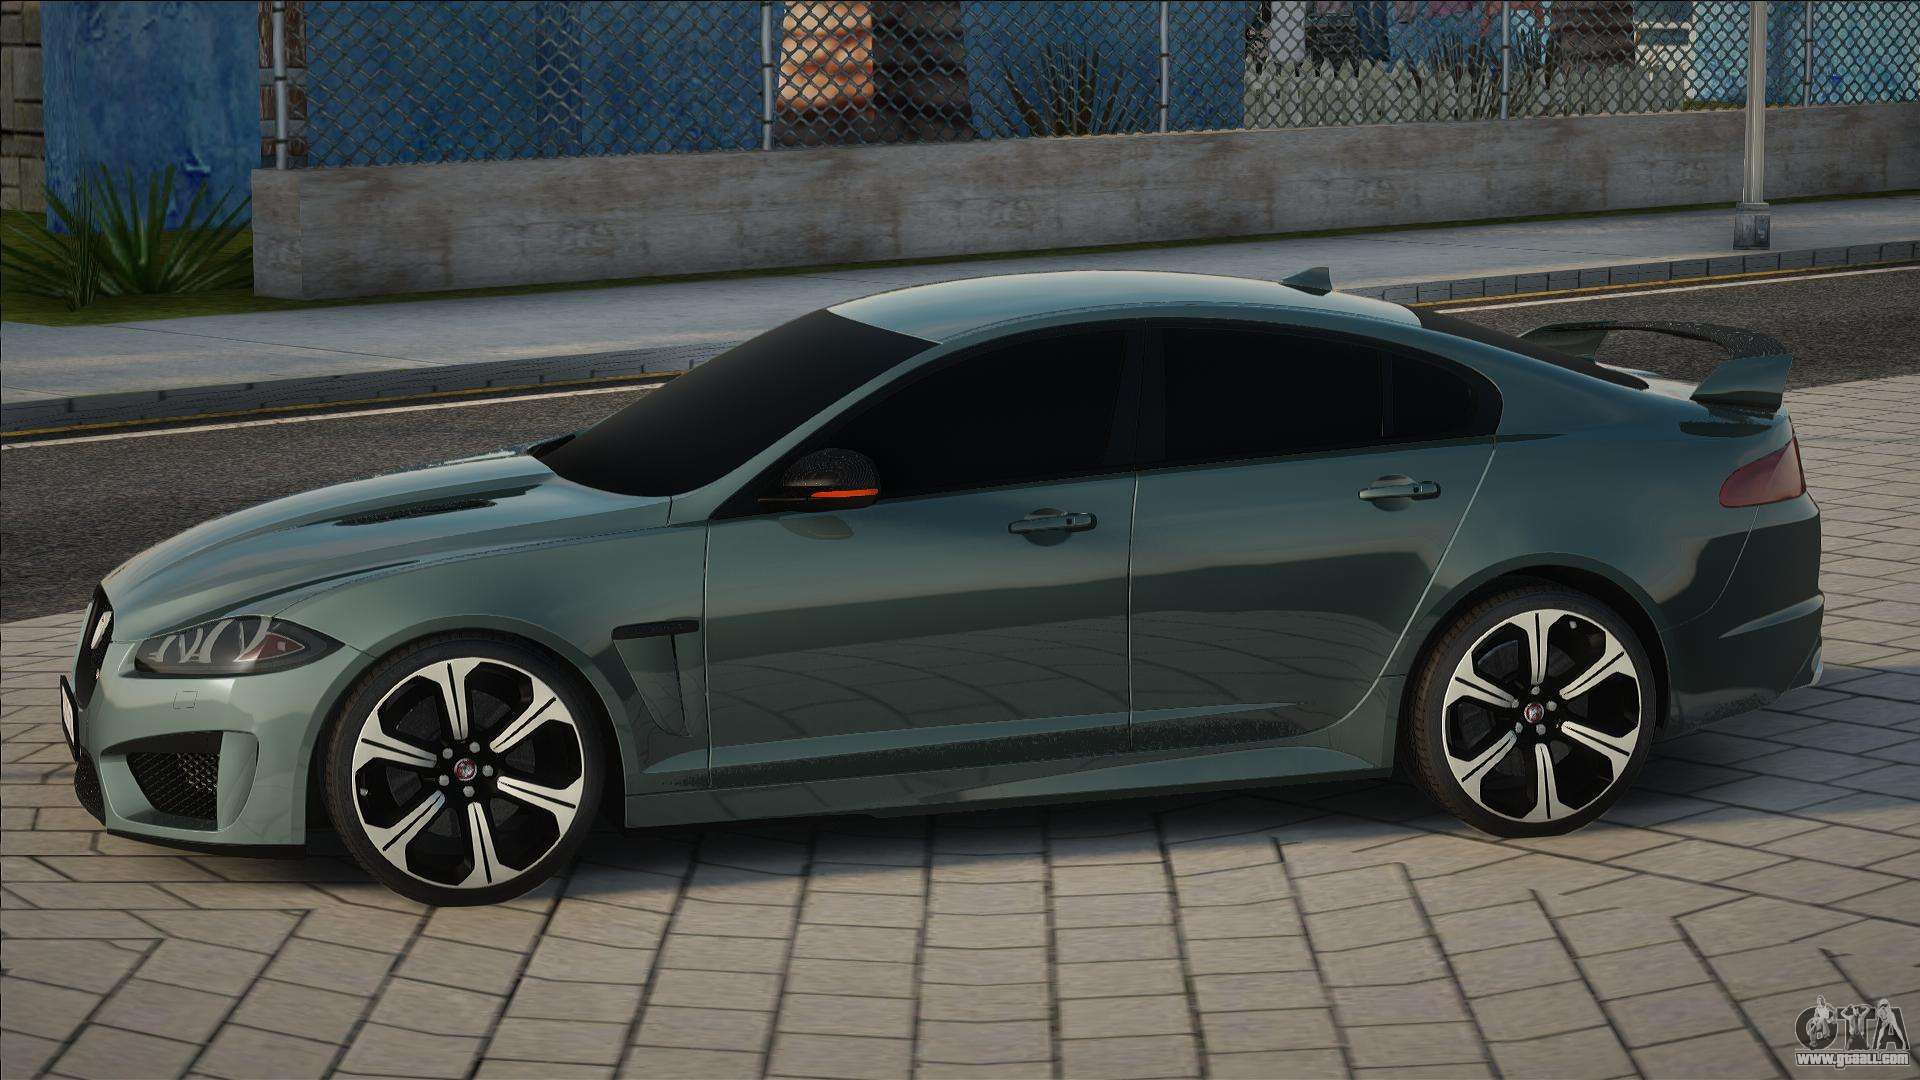 This is a Jaguar XE 'R-S